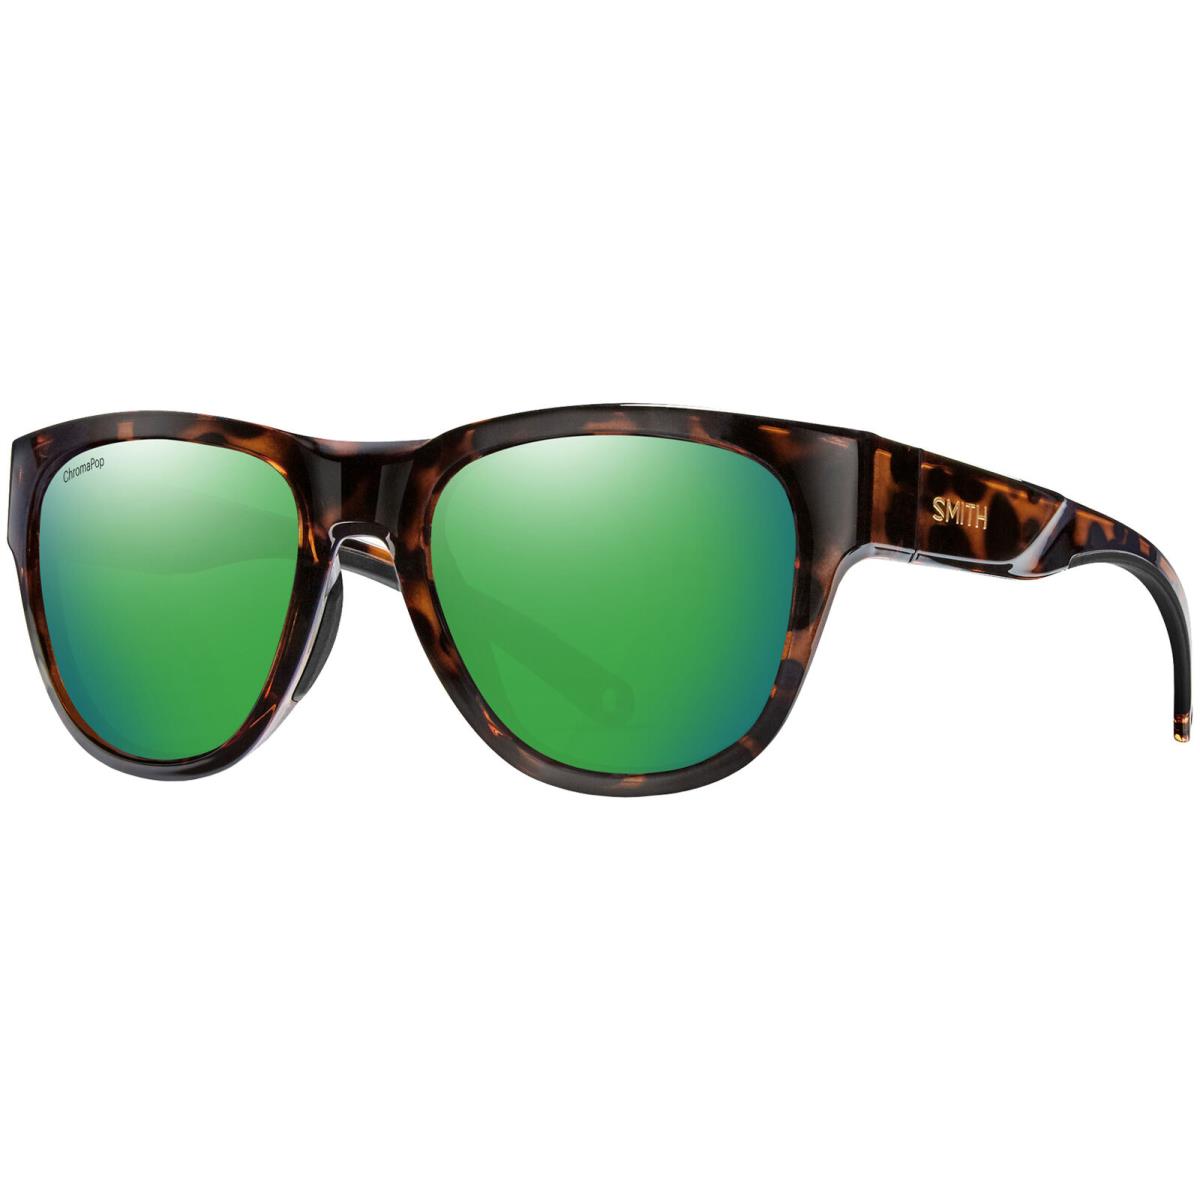 Smith Optics Rockaway Polarized Chromapop Round Sport Sunglasses 204316 Taiwan Tortoise/Green (9N452UI)